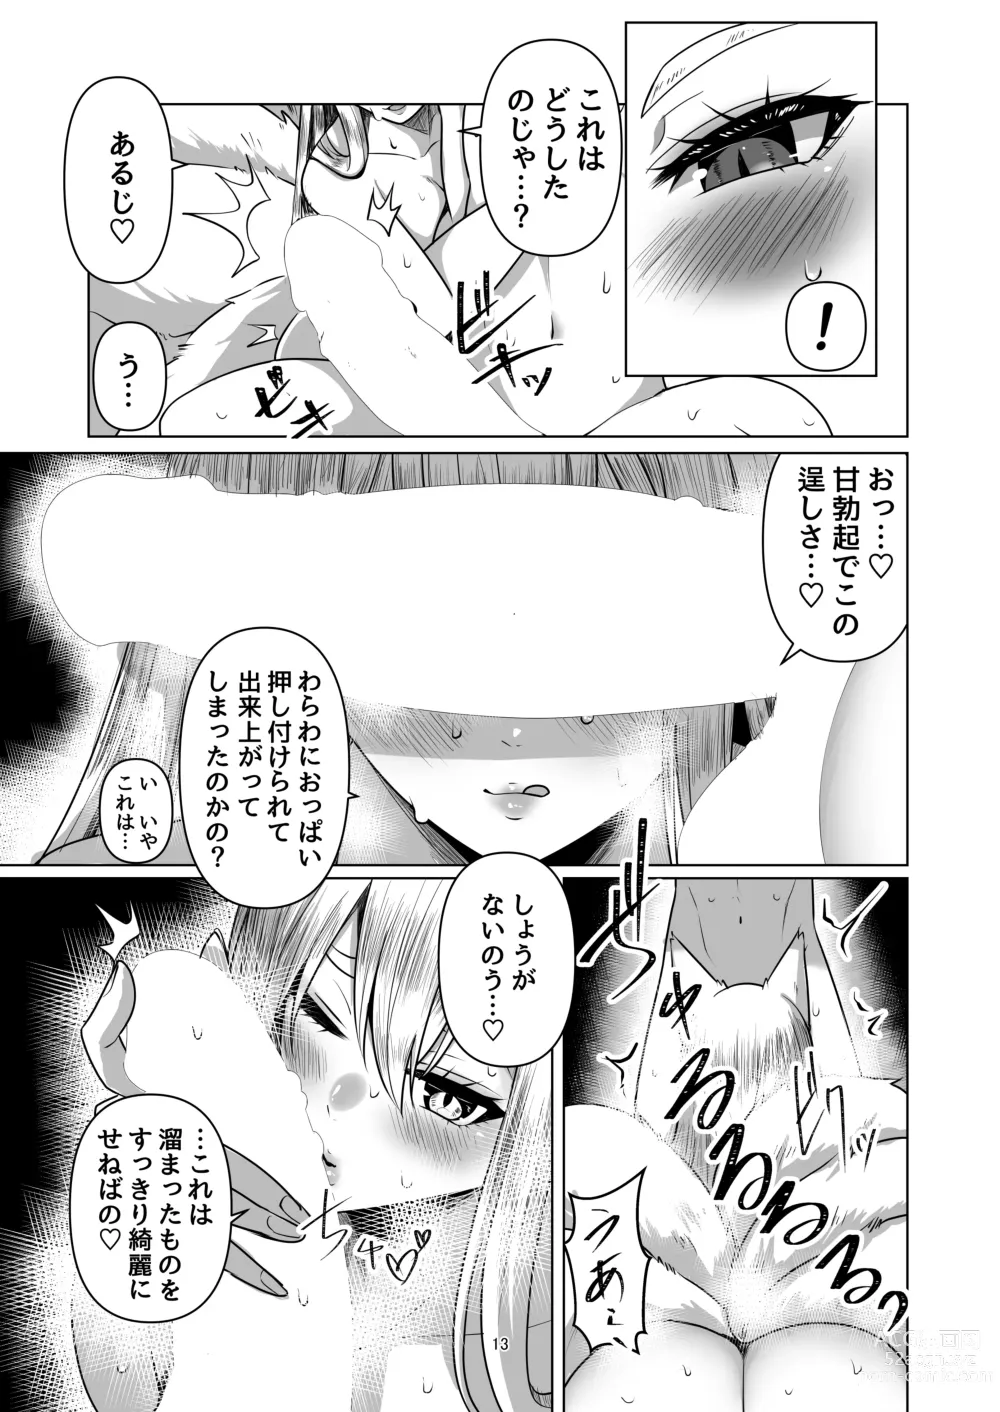 Page 12 of doujinshi Kitsune Tsuki